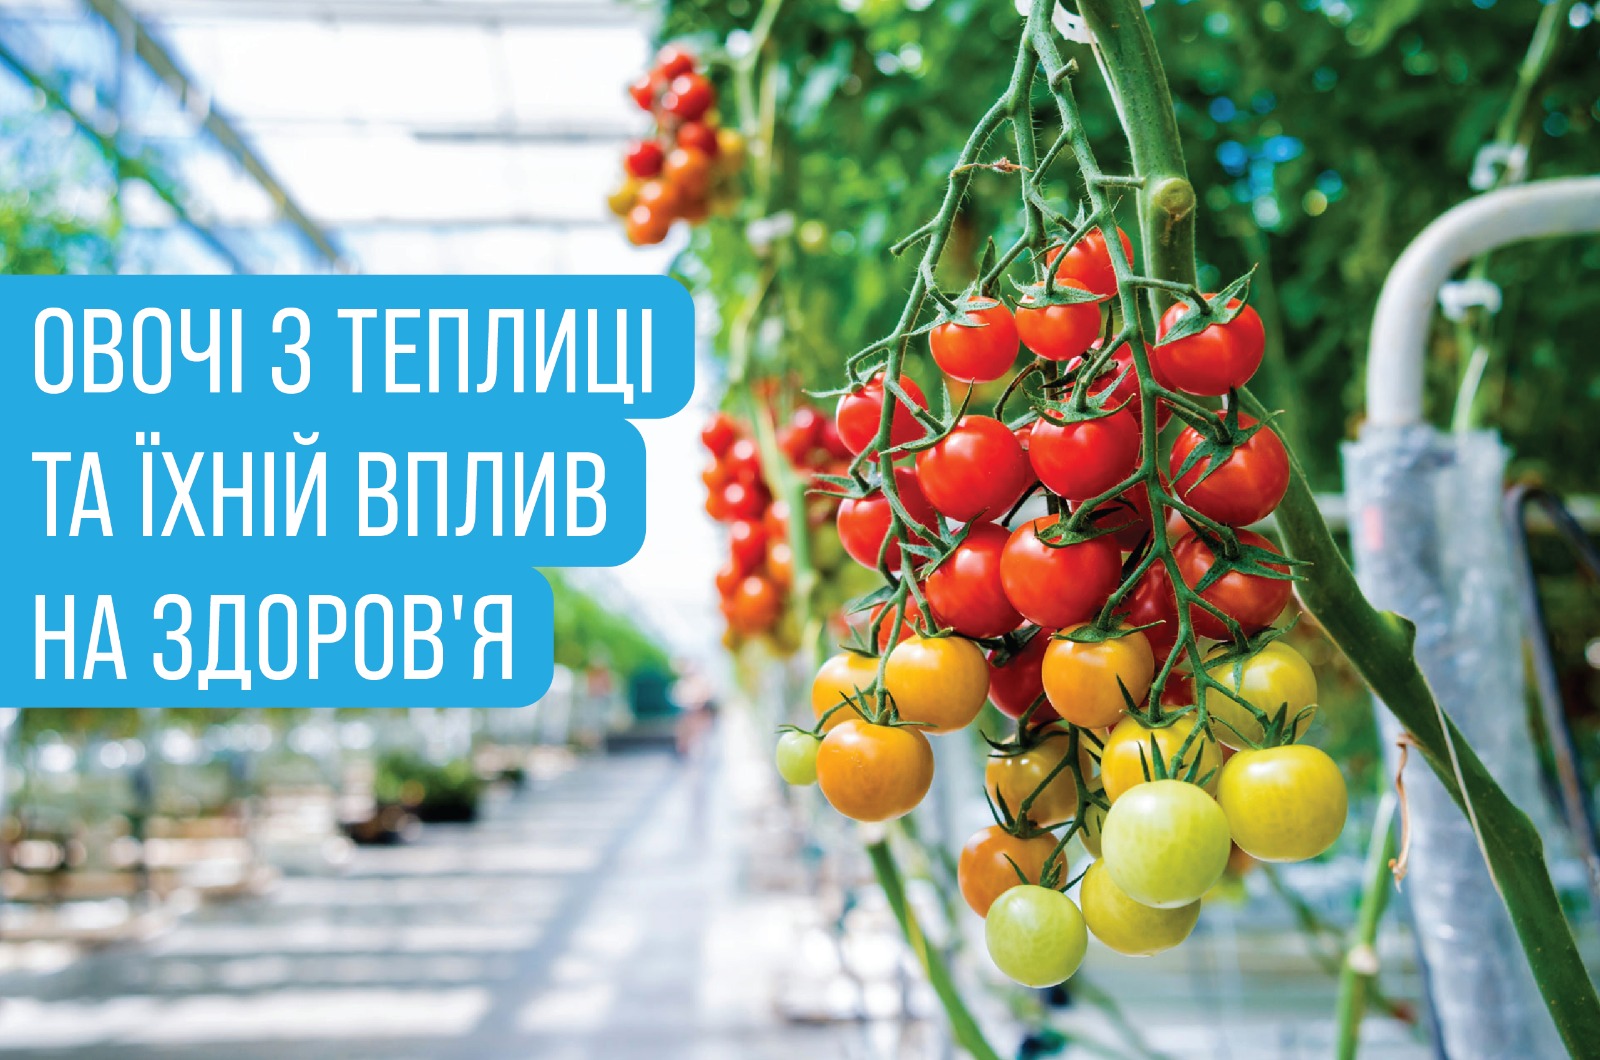 На зображенні дозріваючі плоди томату в теплиці, поруч підпис -Овочі з теплиці та їхній вплив на здоров’я